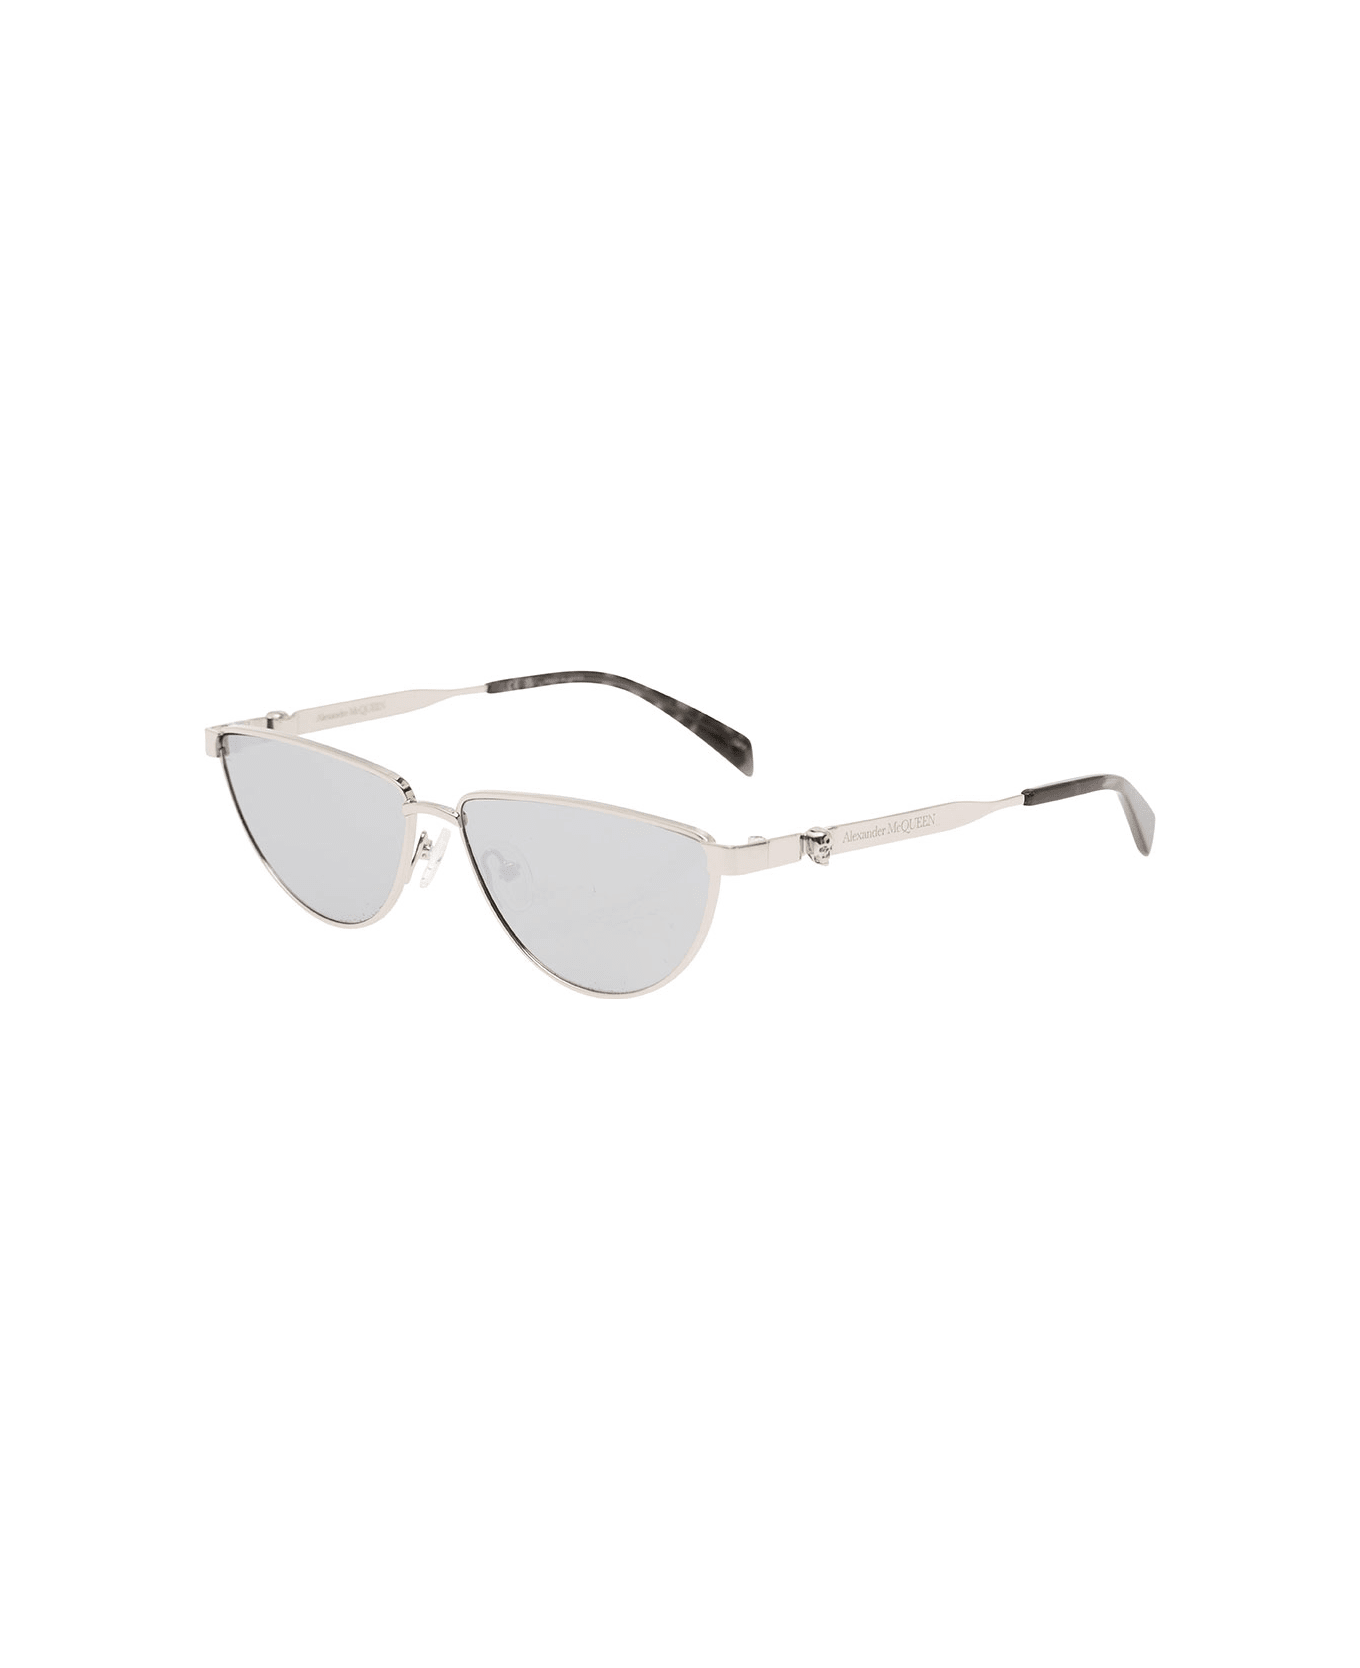 Alexander McQueen Sunglasses With Metal Frame - Metallic サングラス